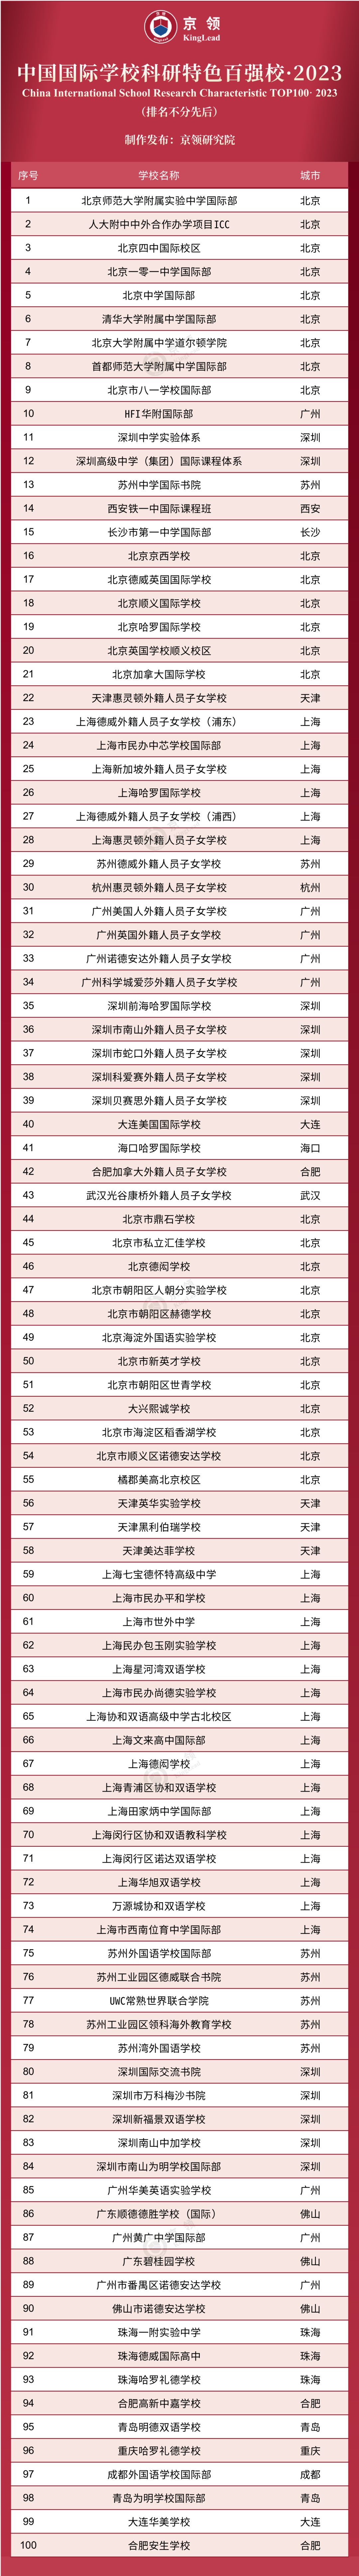 京领2023中国国际学校特色榜发布 英美方向国际学校哪家强  数据 第3张